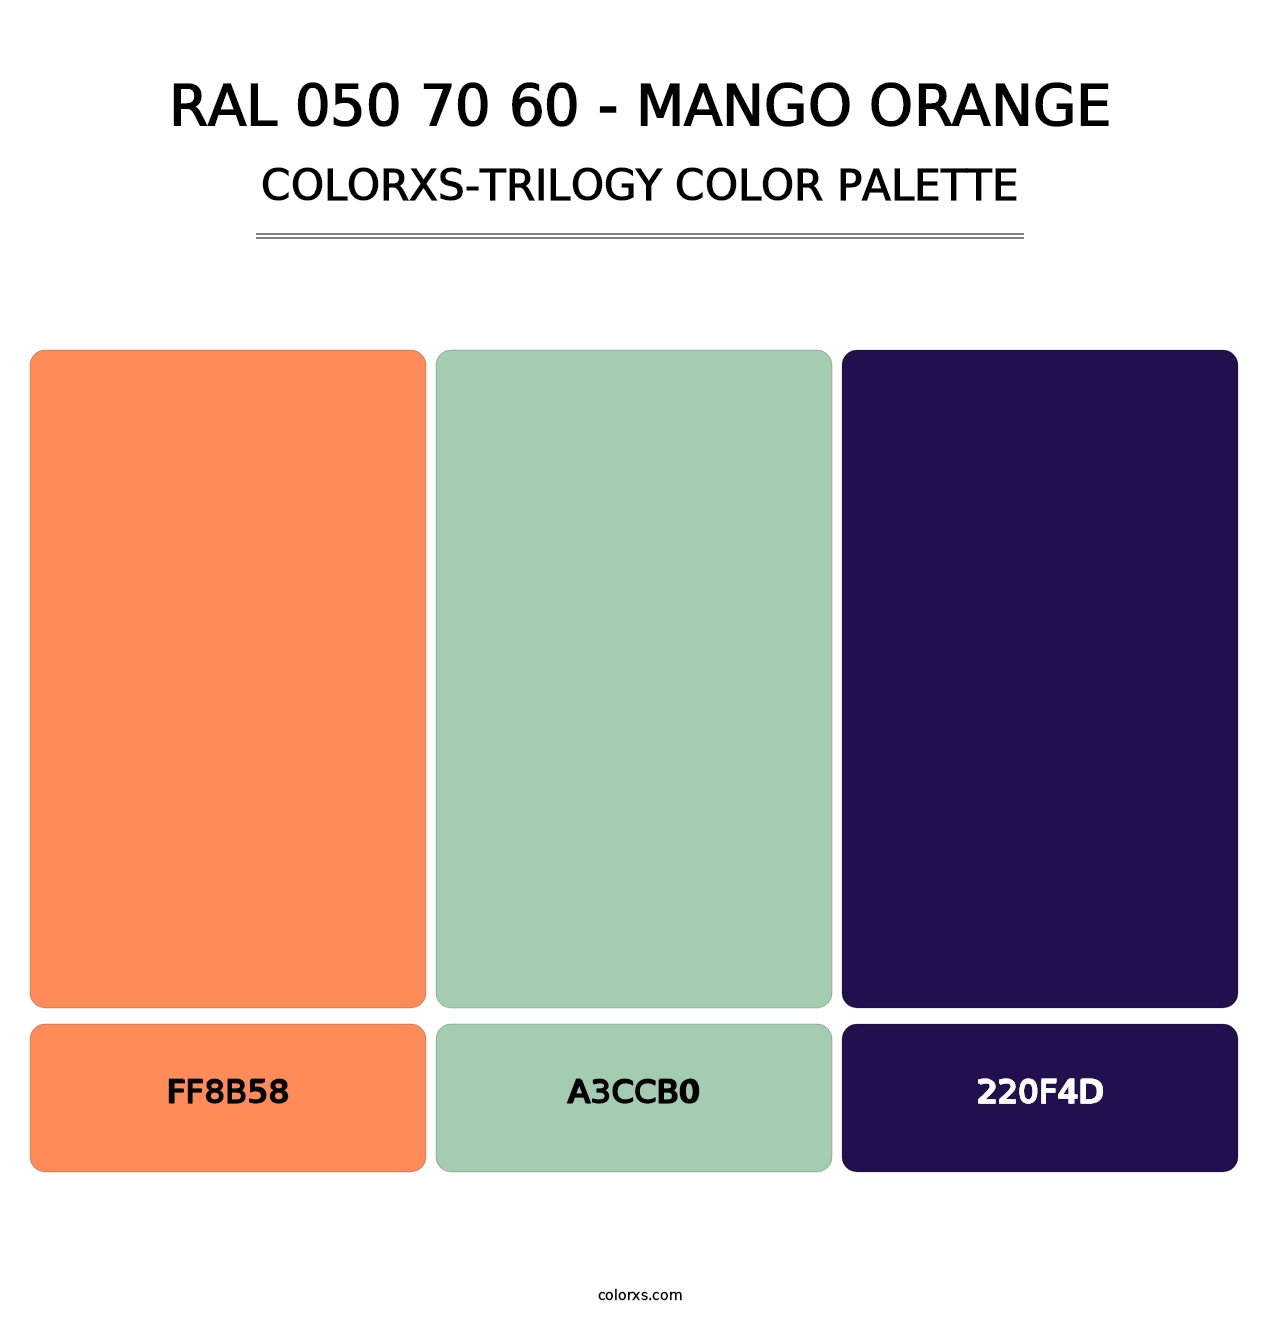 RAL 050 70 60 - Mango Orange - Colorxs Trilogy Palette